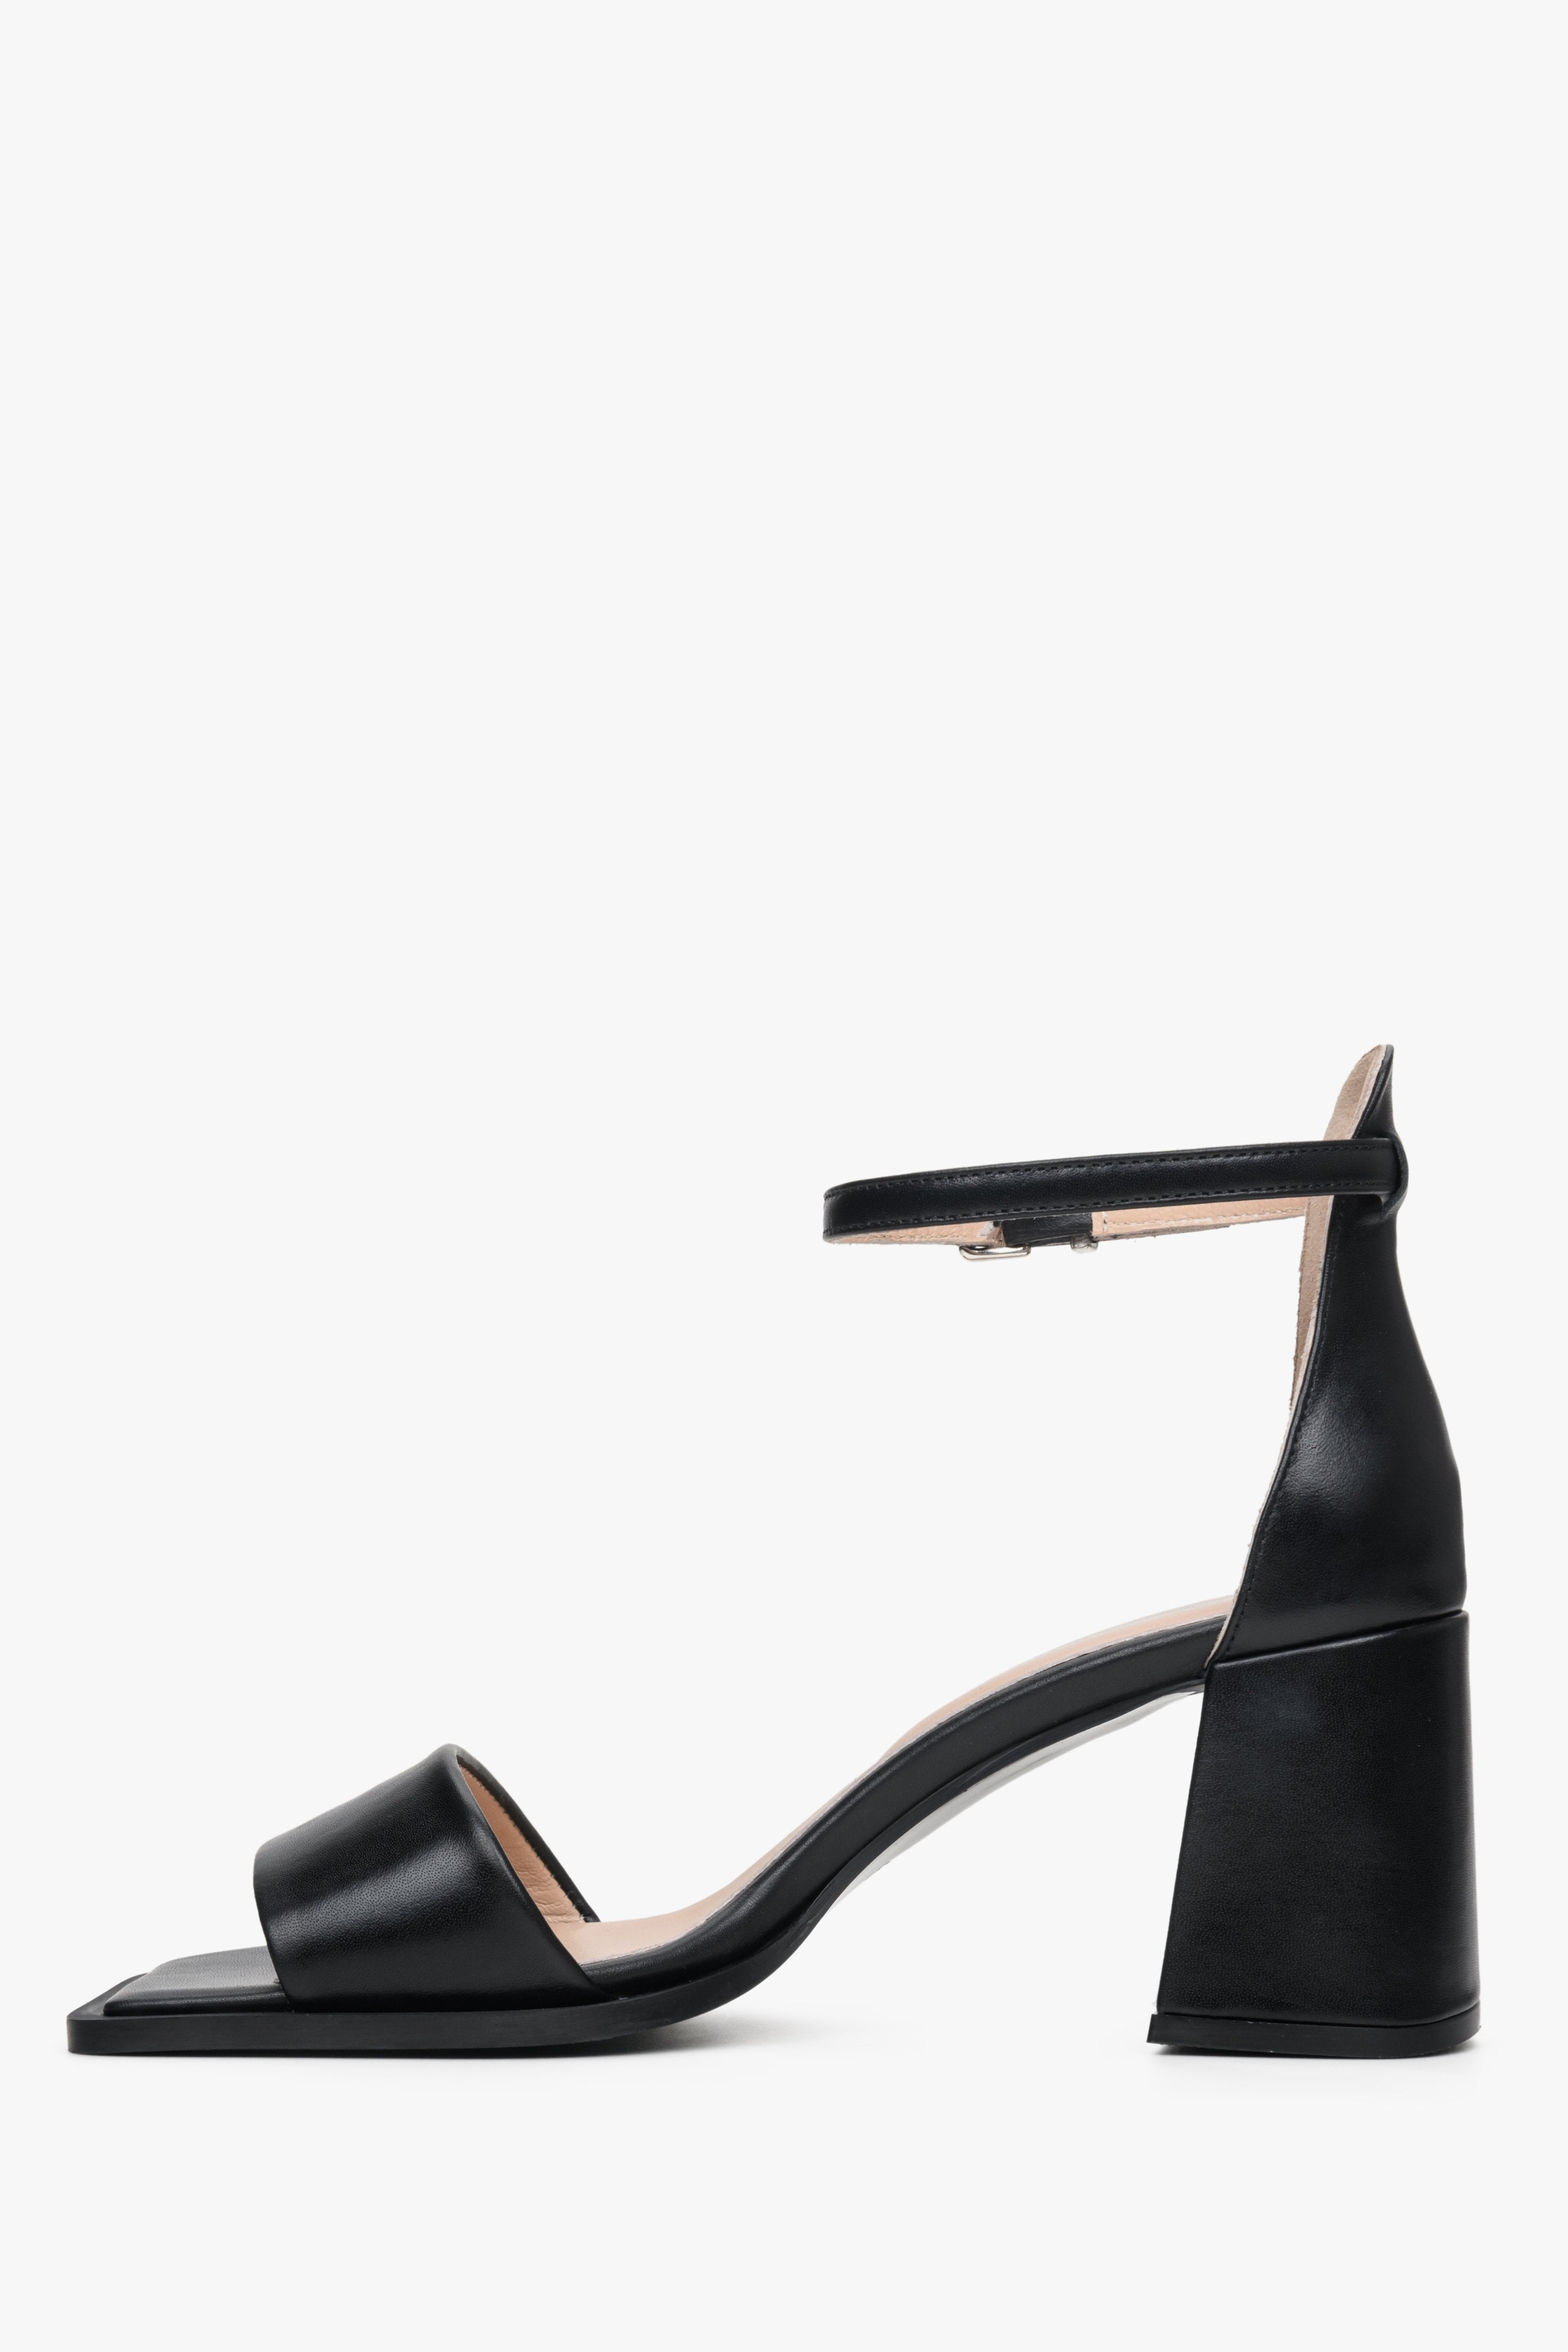 Damskie, czarne sandały na słupku ze skóry naturalnej Estro - profil butów.